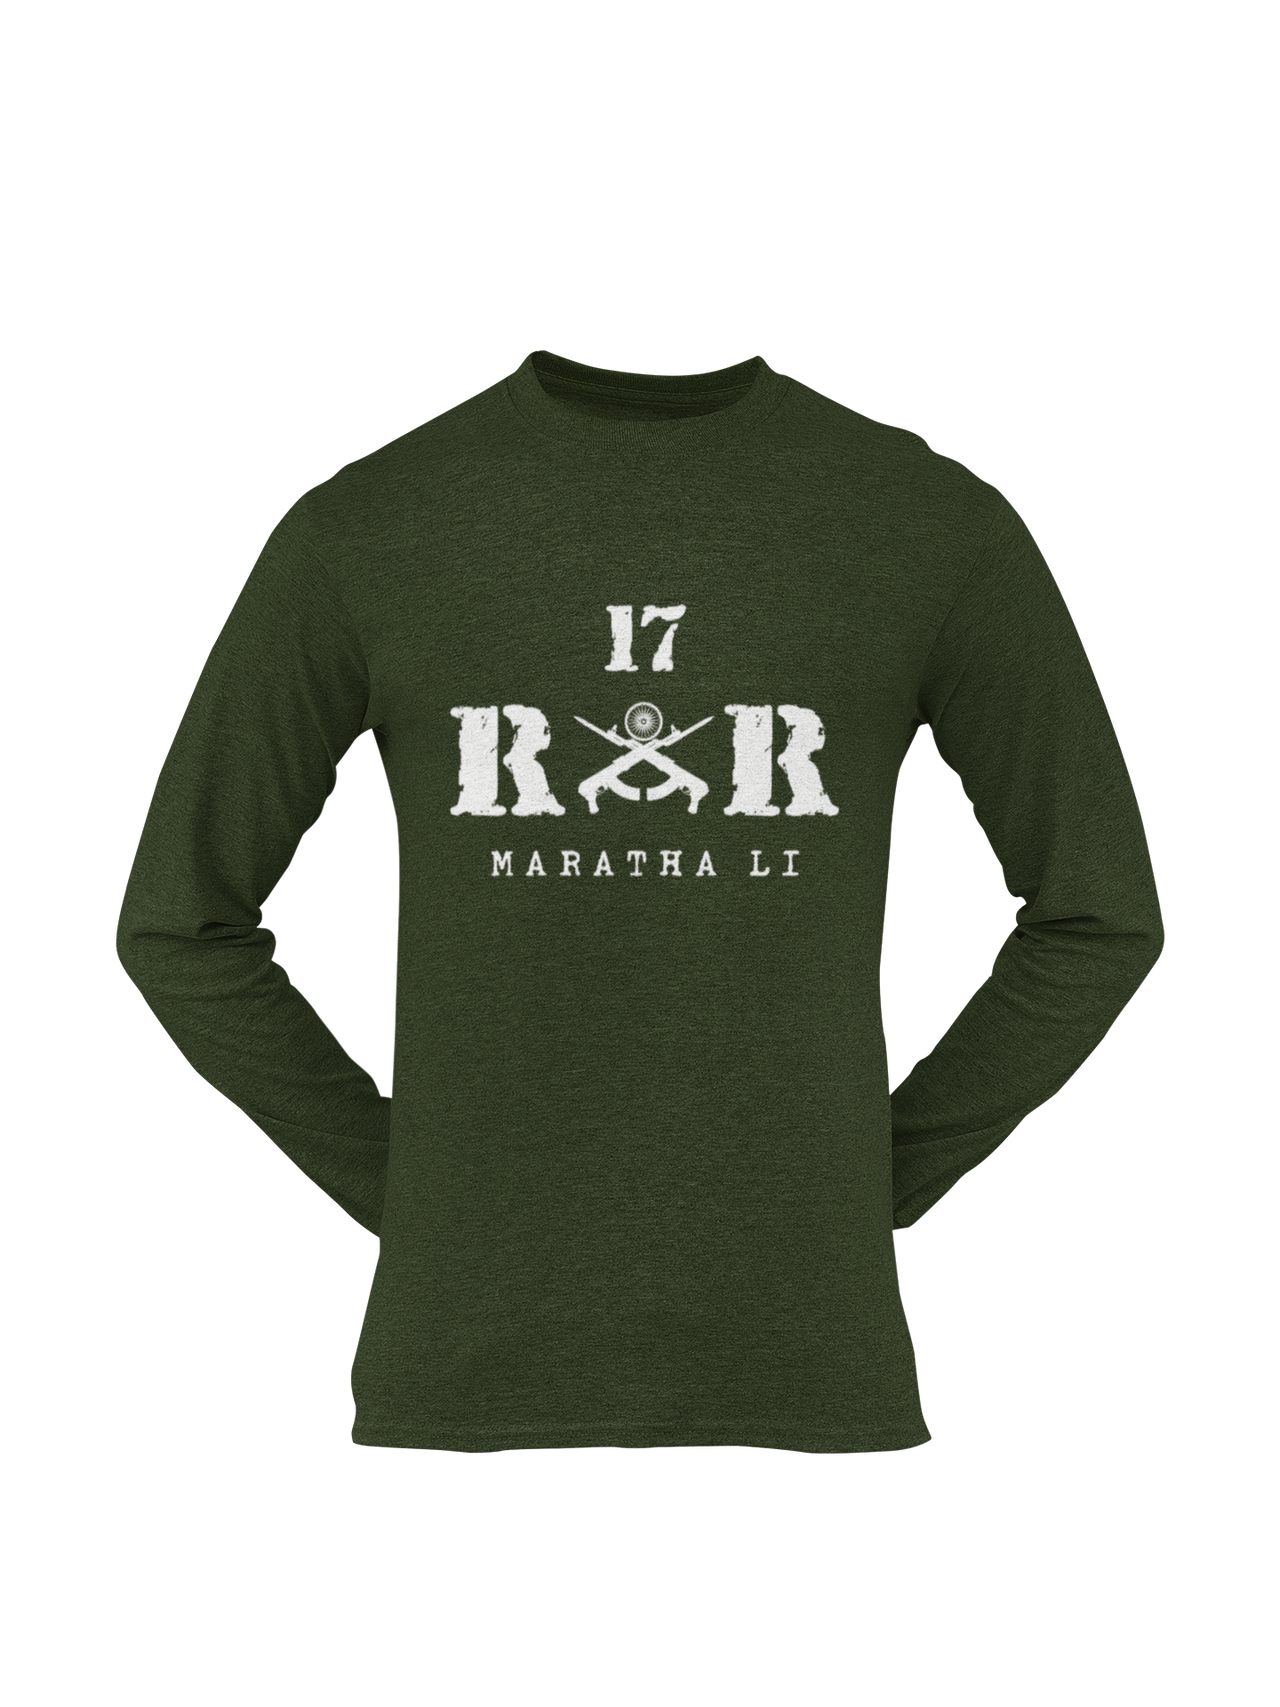 Rashtriya Rifles T-shirt - 17 RR Maratha Li (Men)